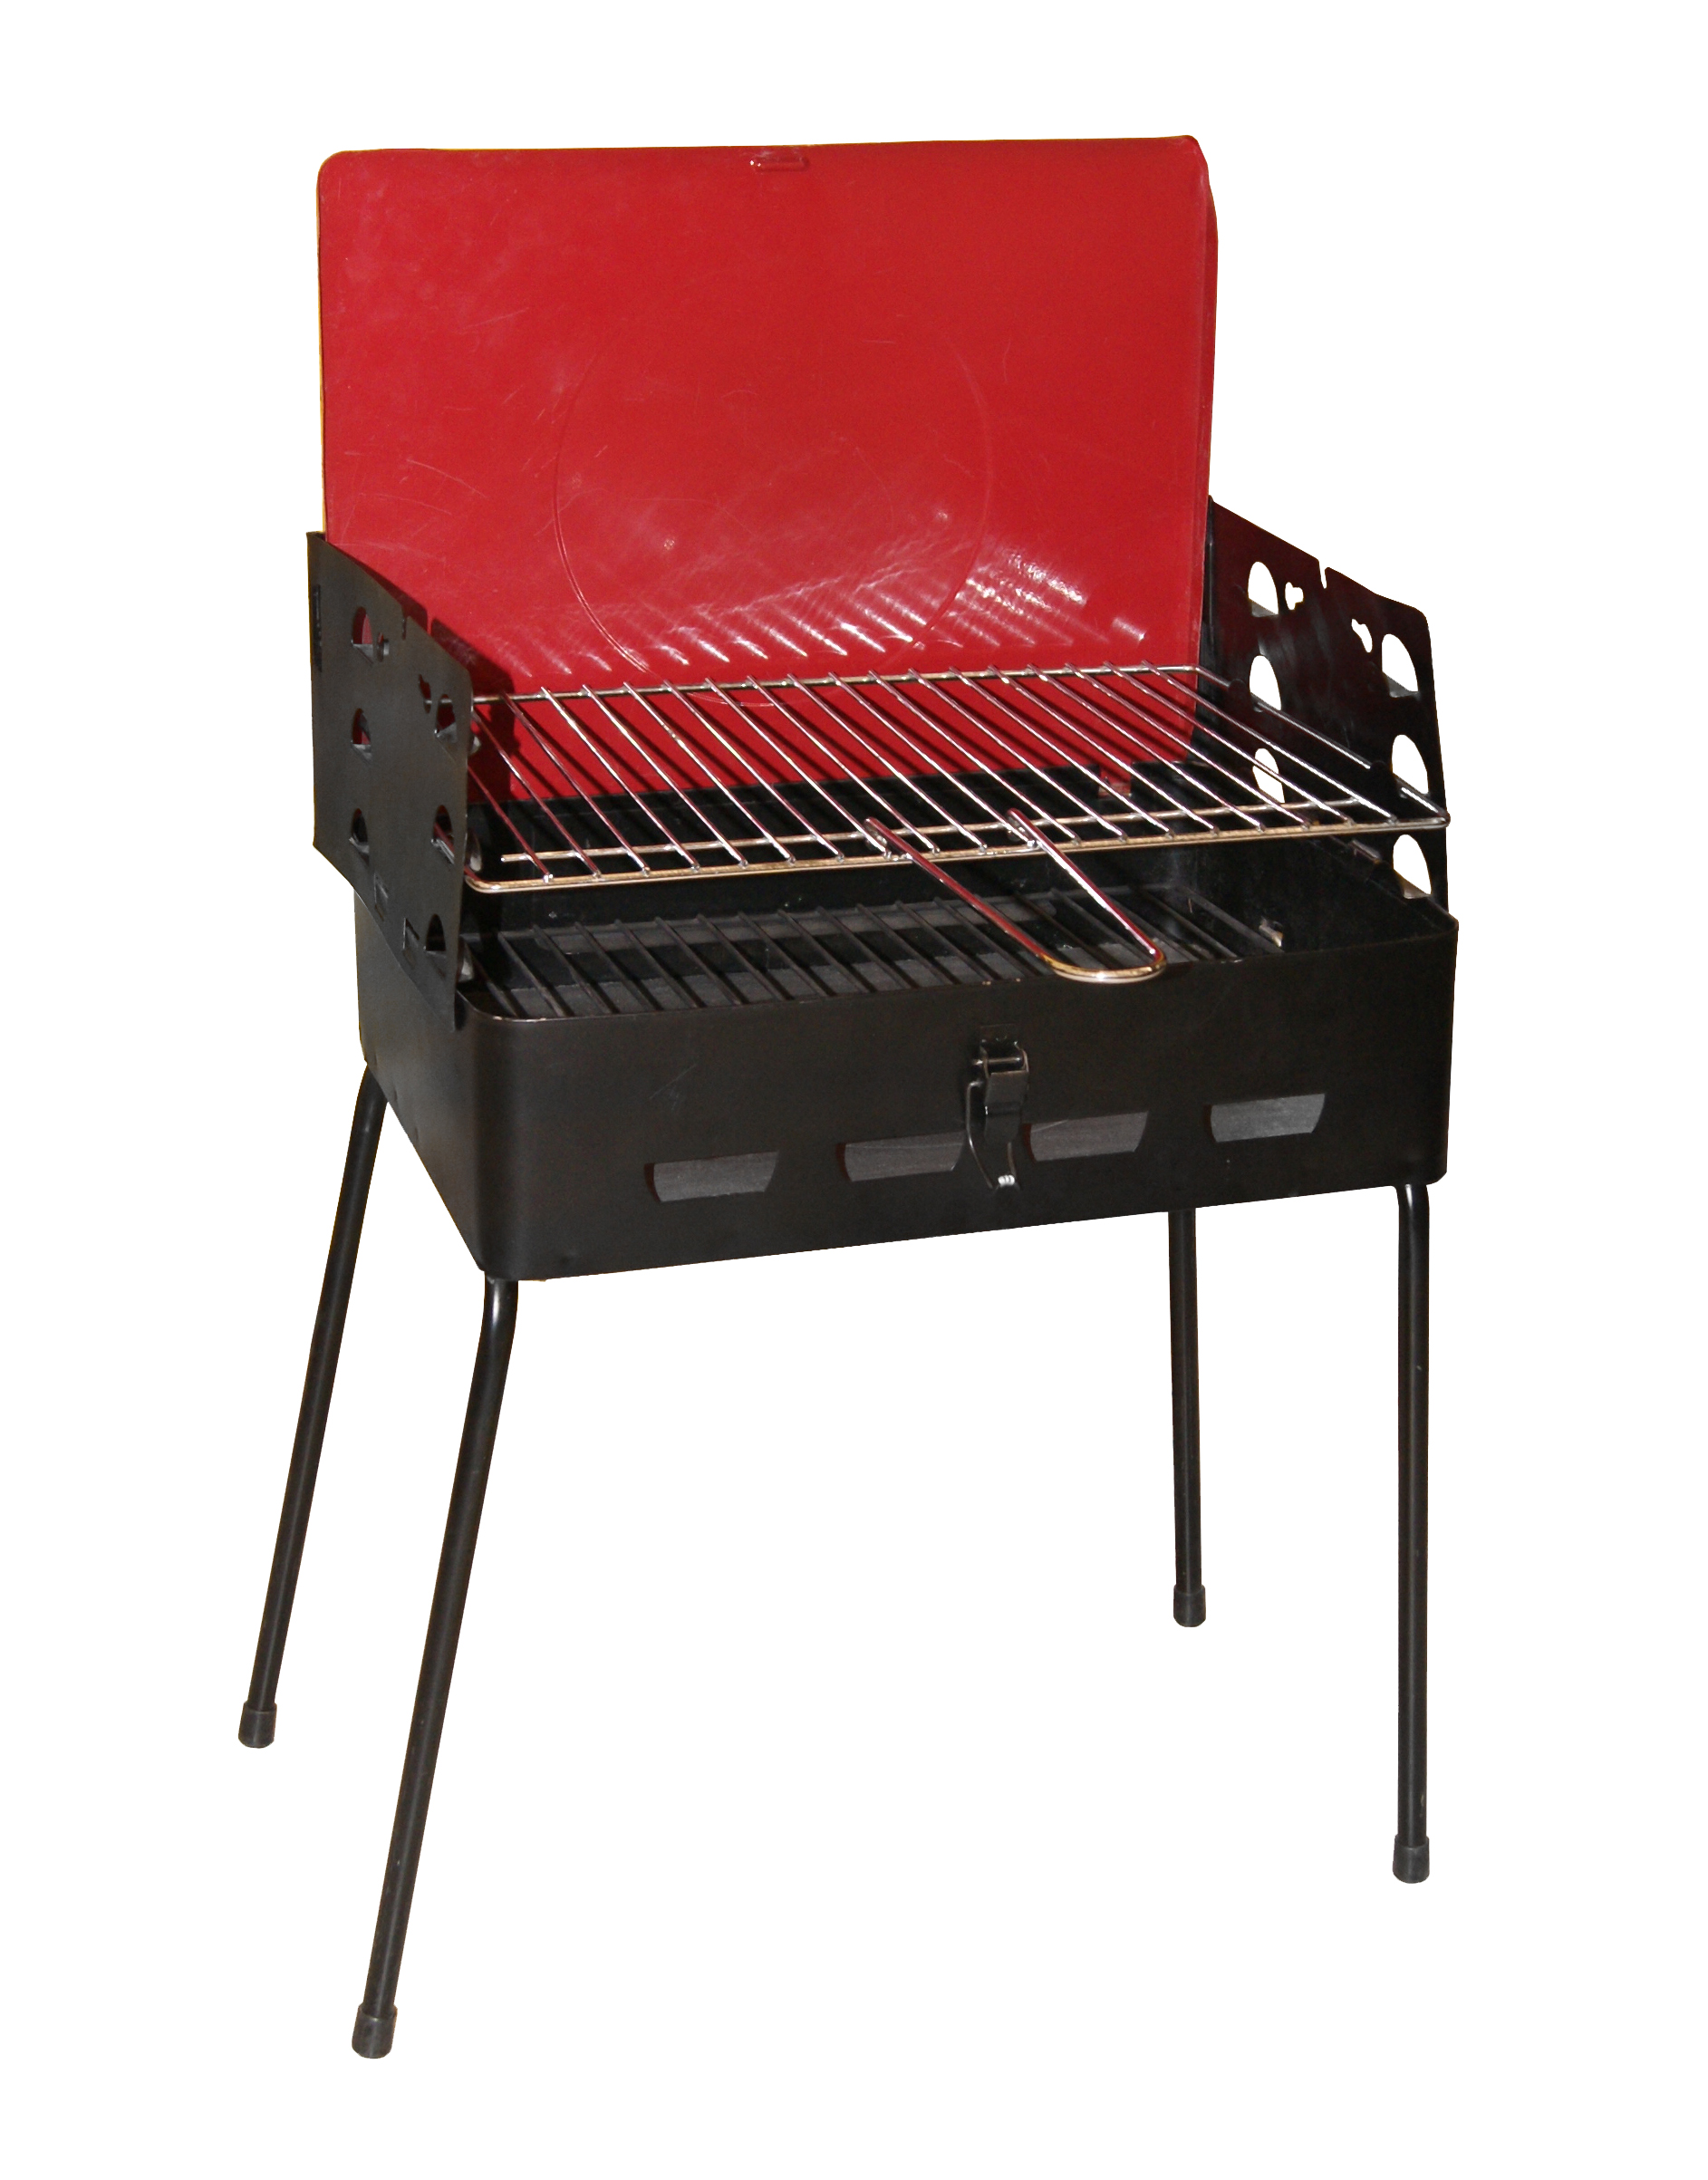 Barbecue carbonella perseo 40x30x45cm nero/rosso